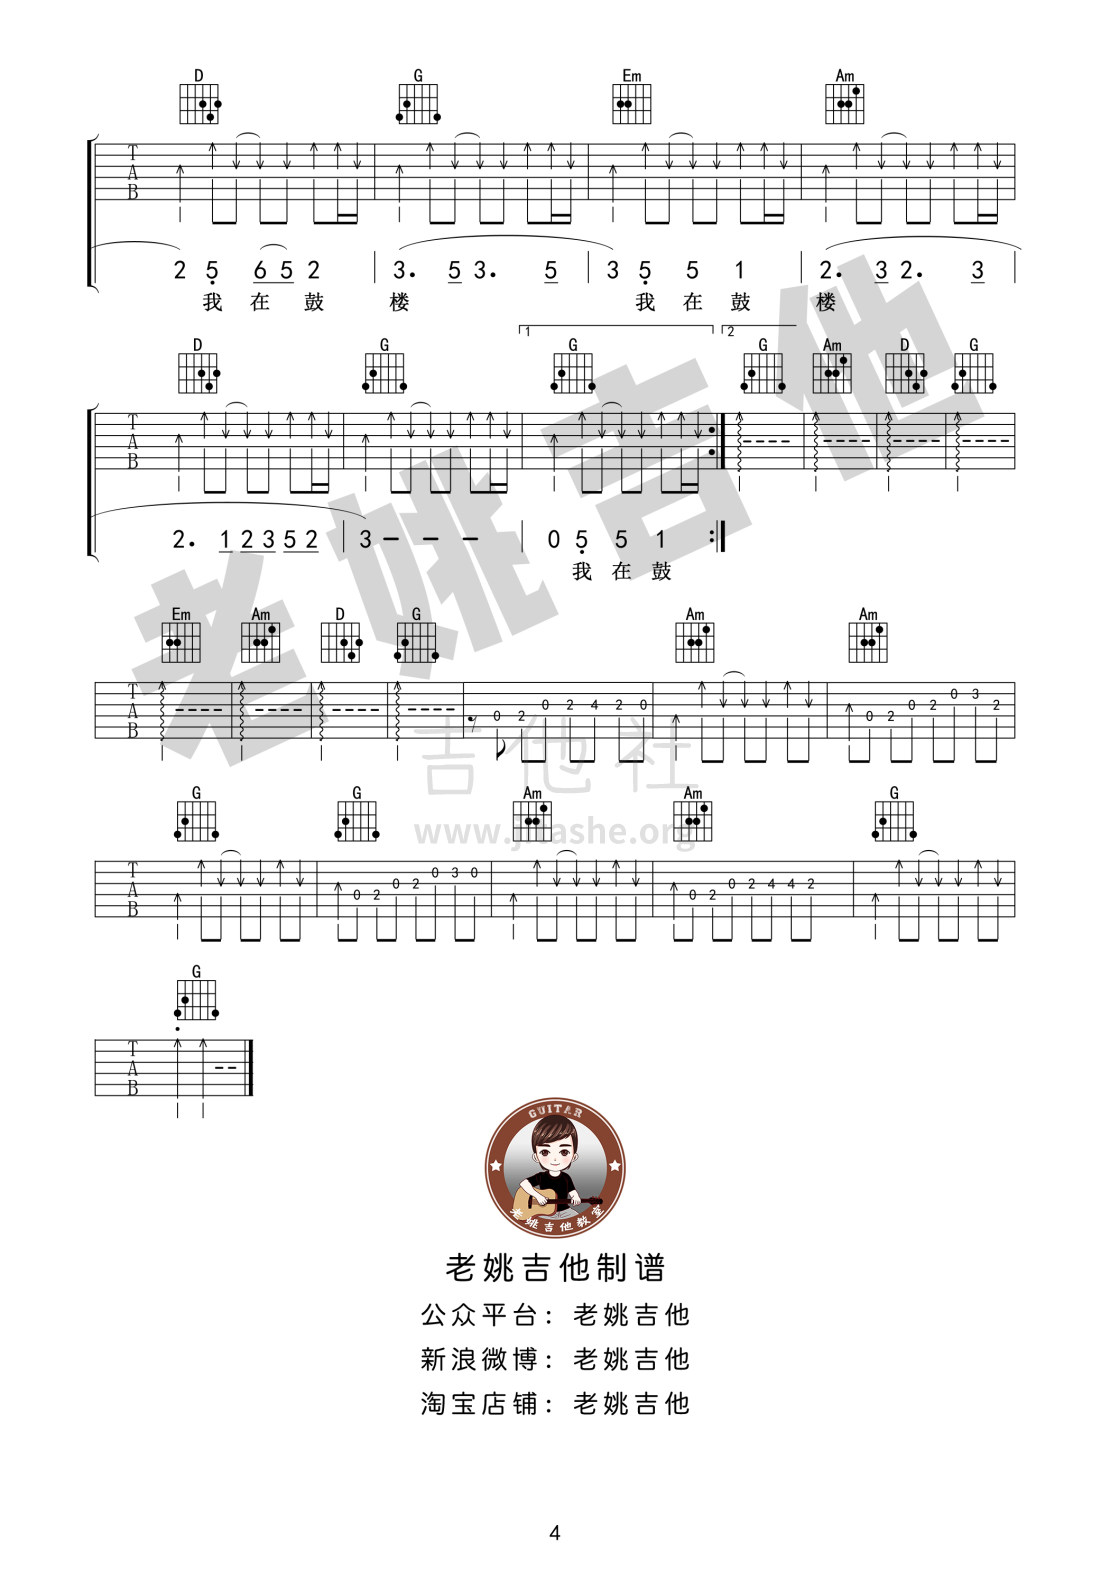 鼓楼（老姚吉他）吉他谱(图片谱,弹唱)_赵雷(雷子)_鼓楼 (4).jpg